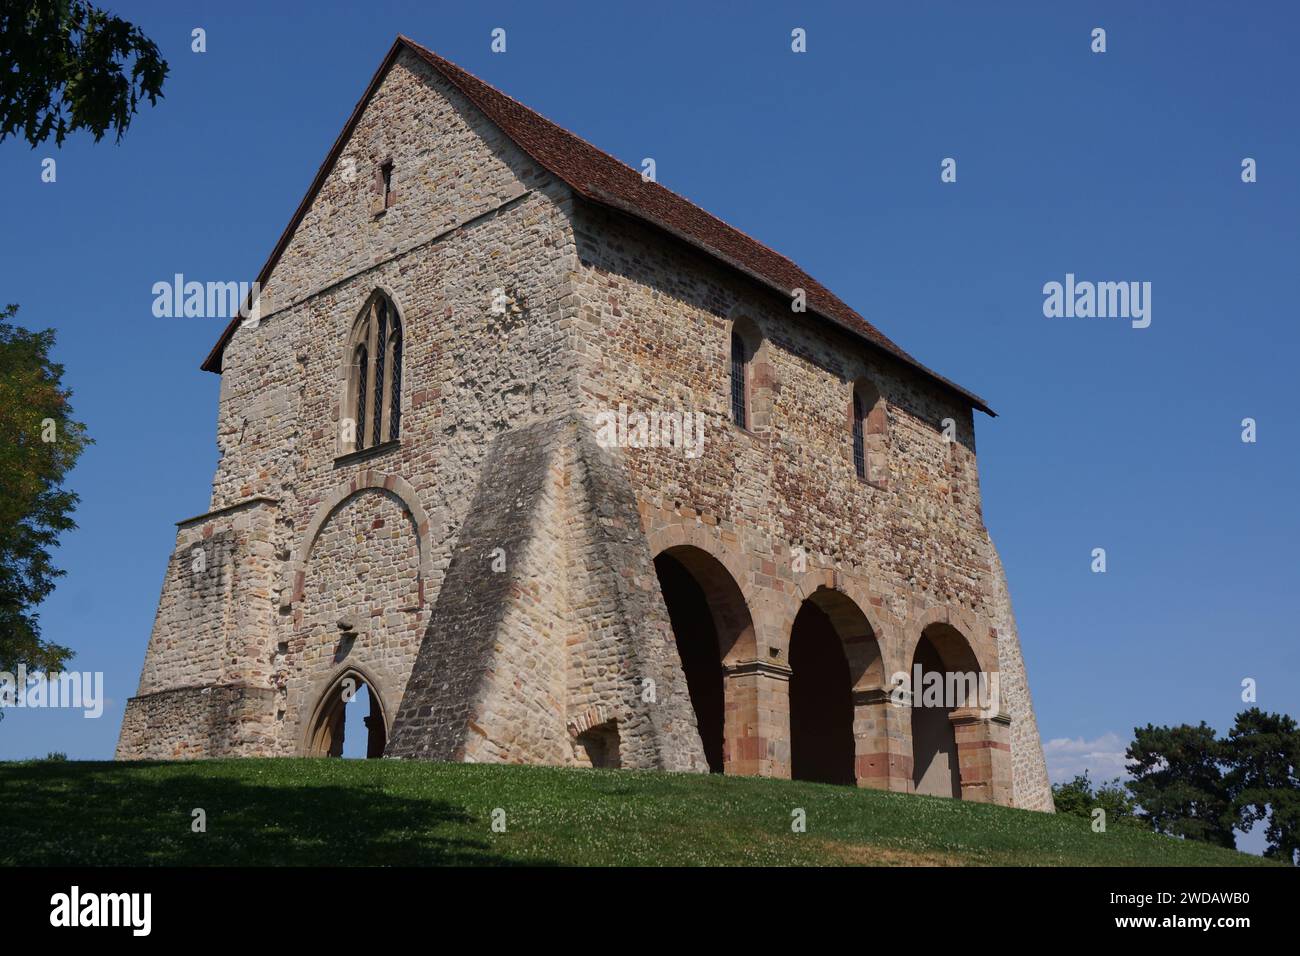 Vieille église en pierre avec fenêtre ouverte, nichée près de l'arbre Banque D'Images